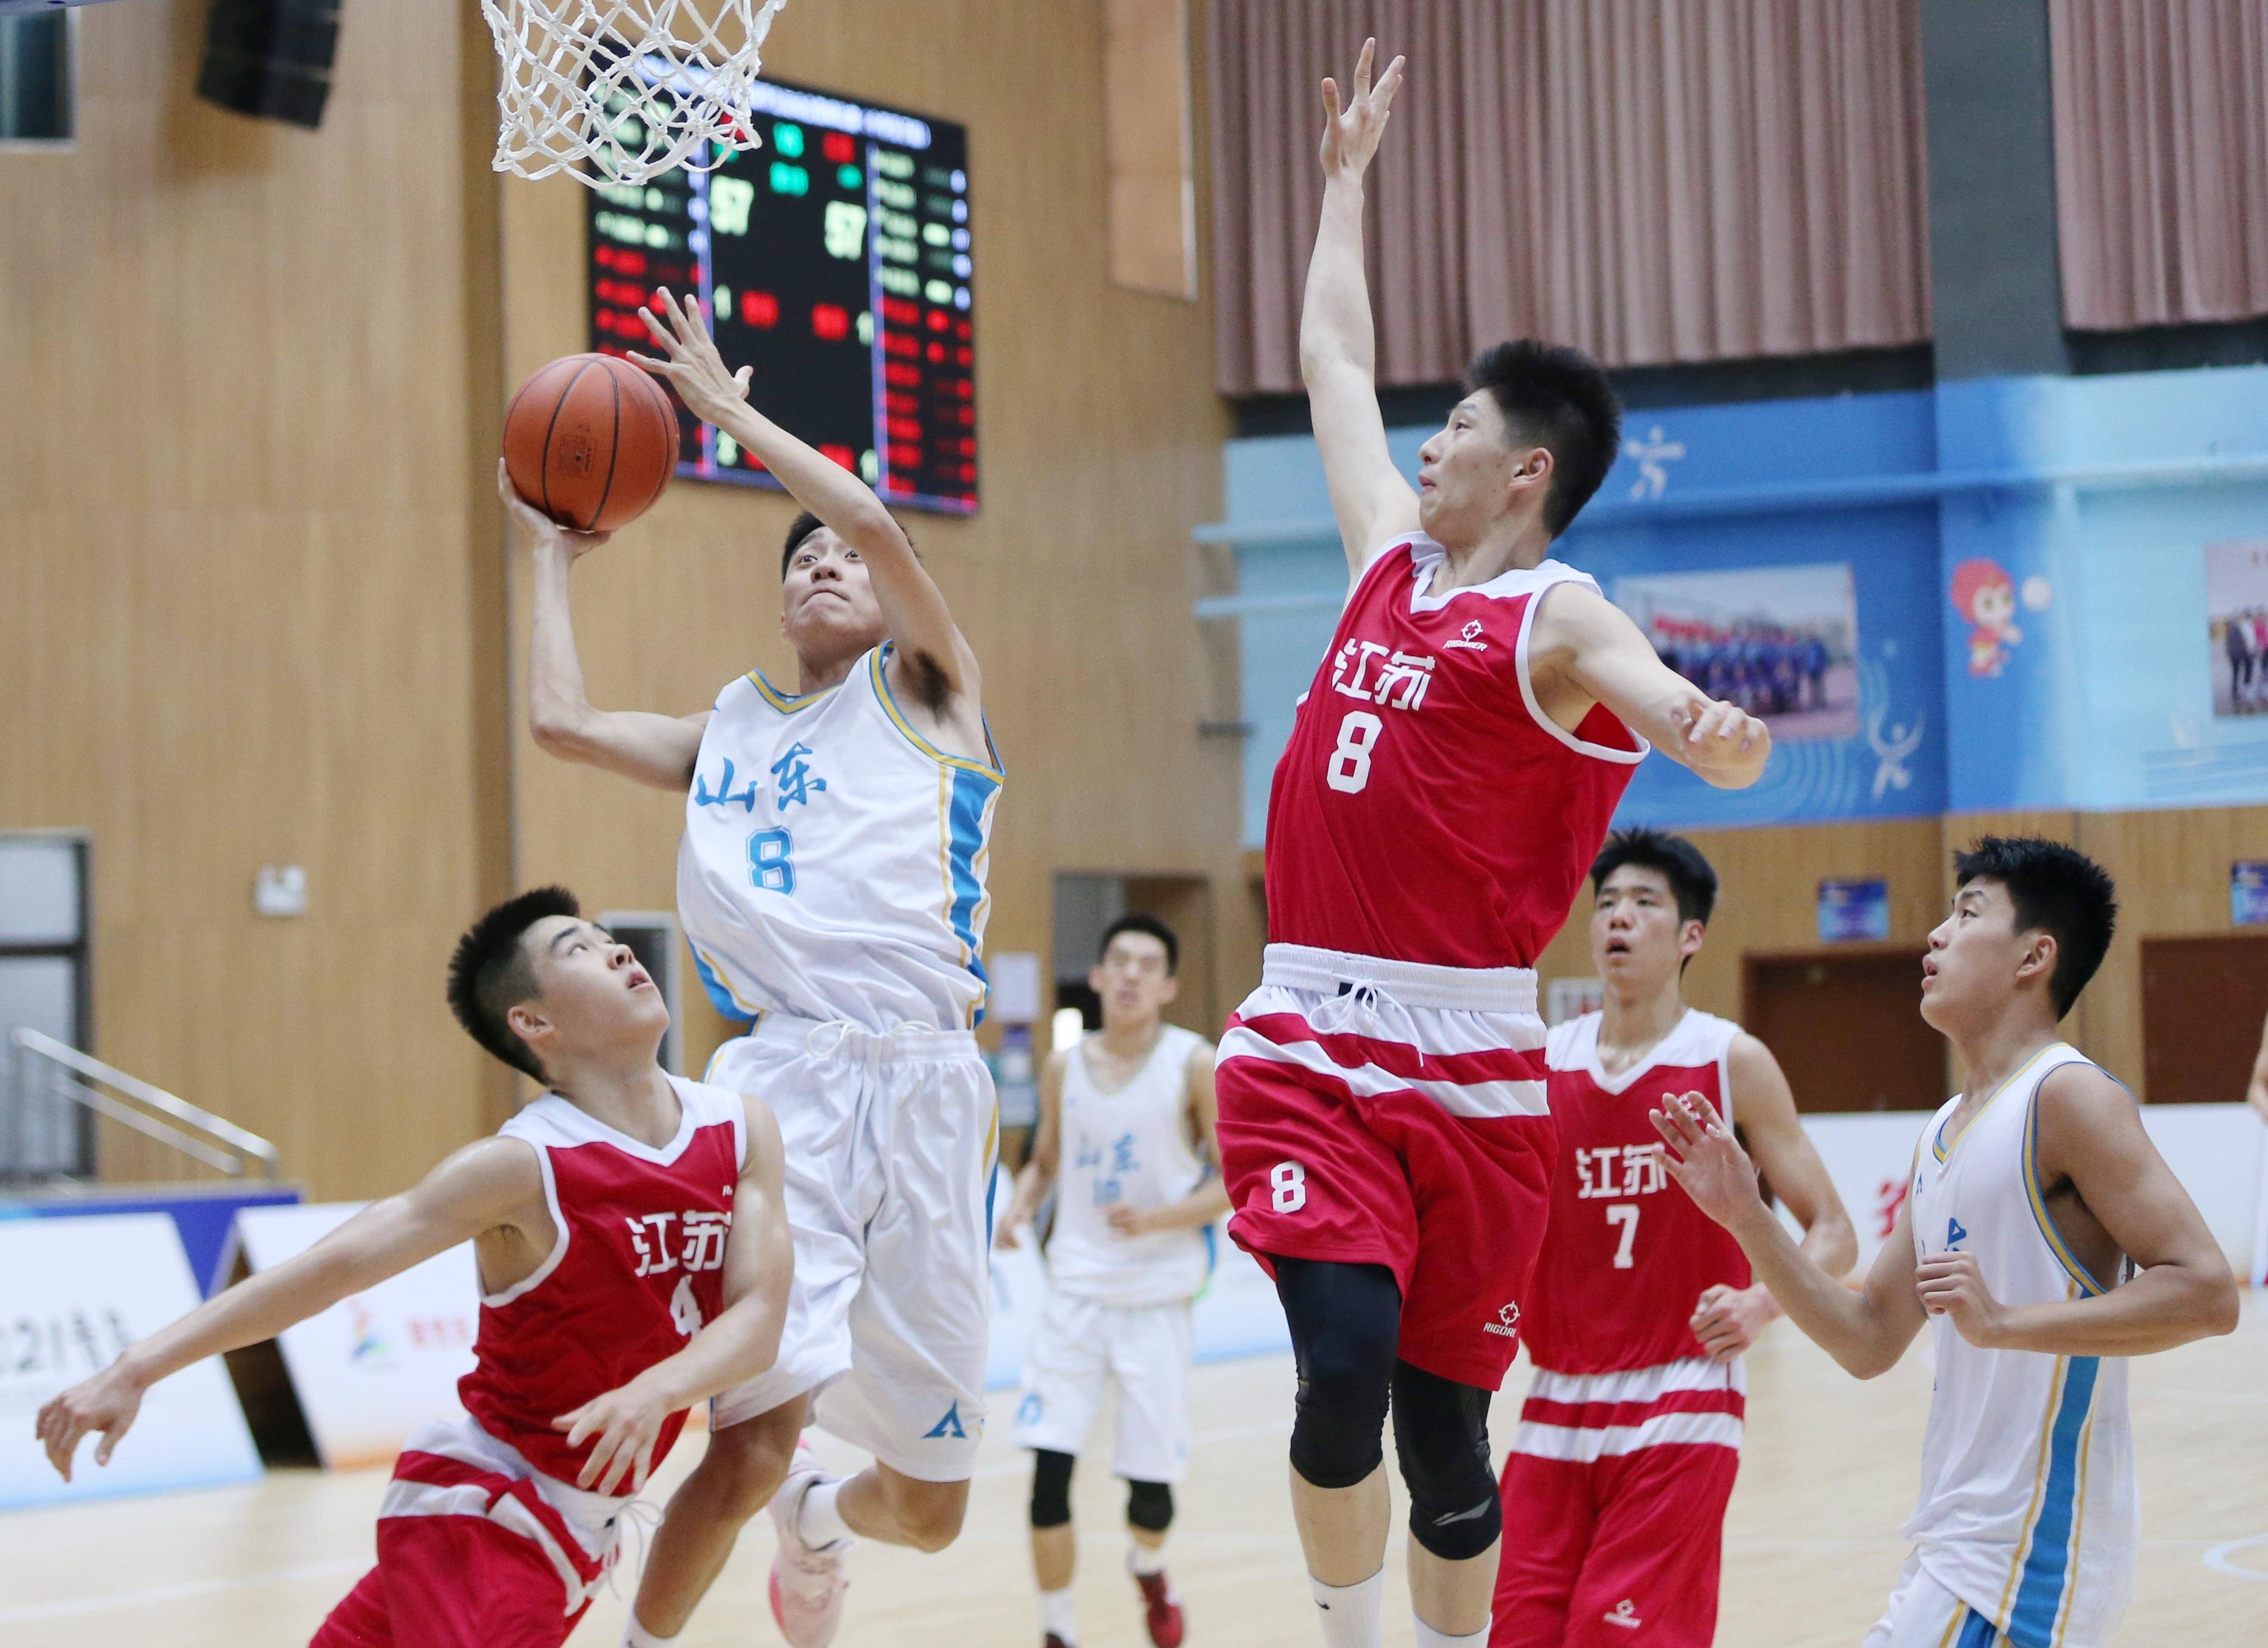 全国学生运动会篮球比赛现场。韩星